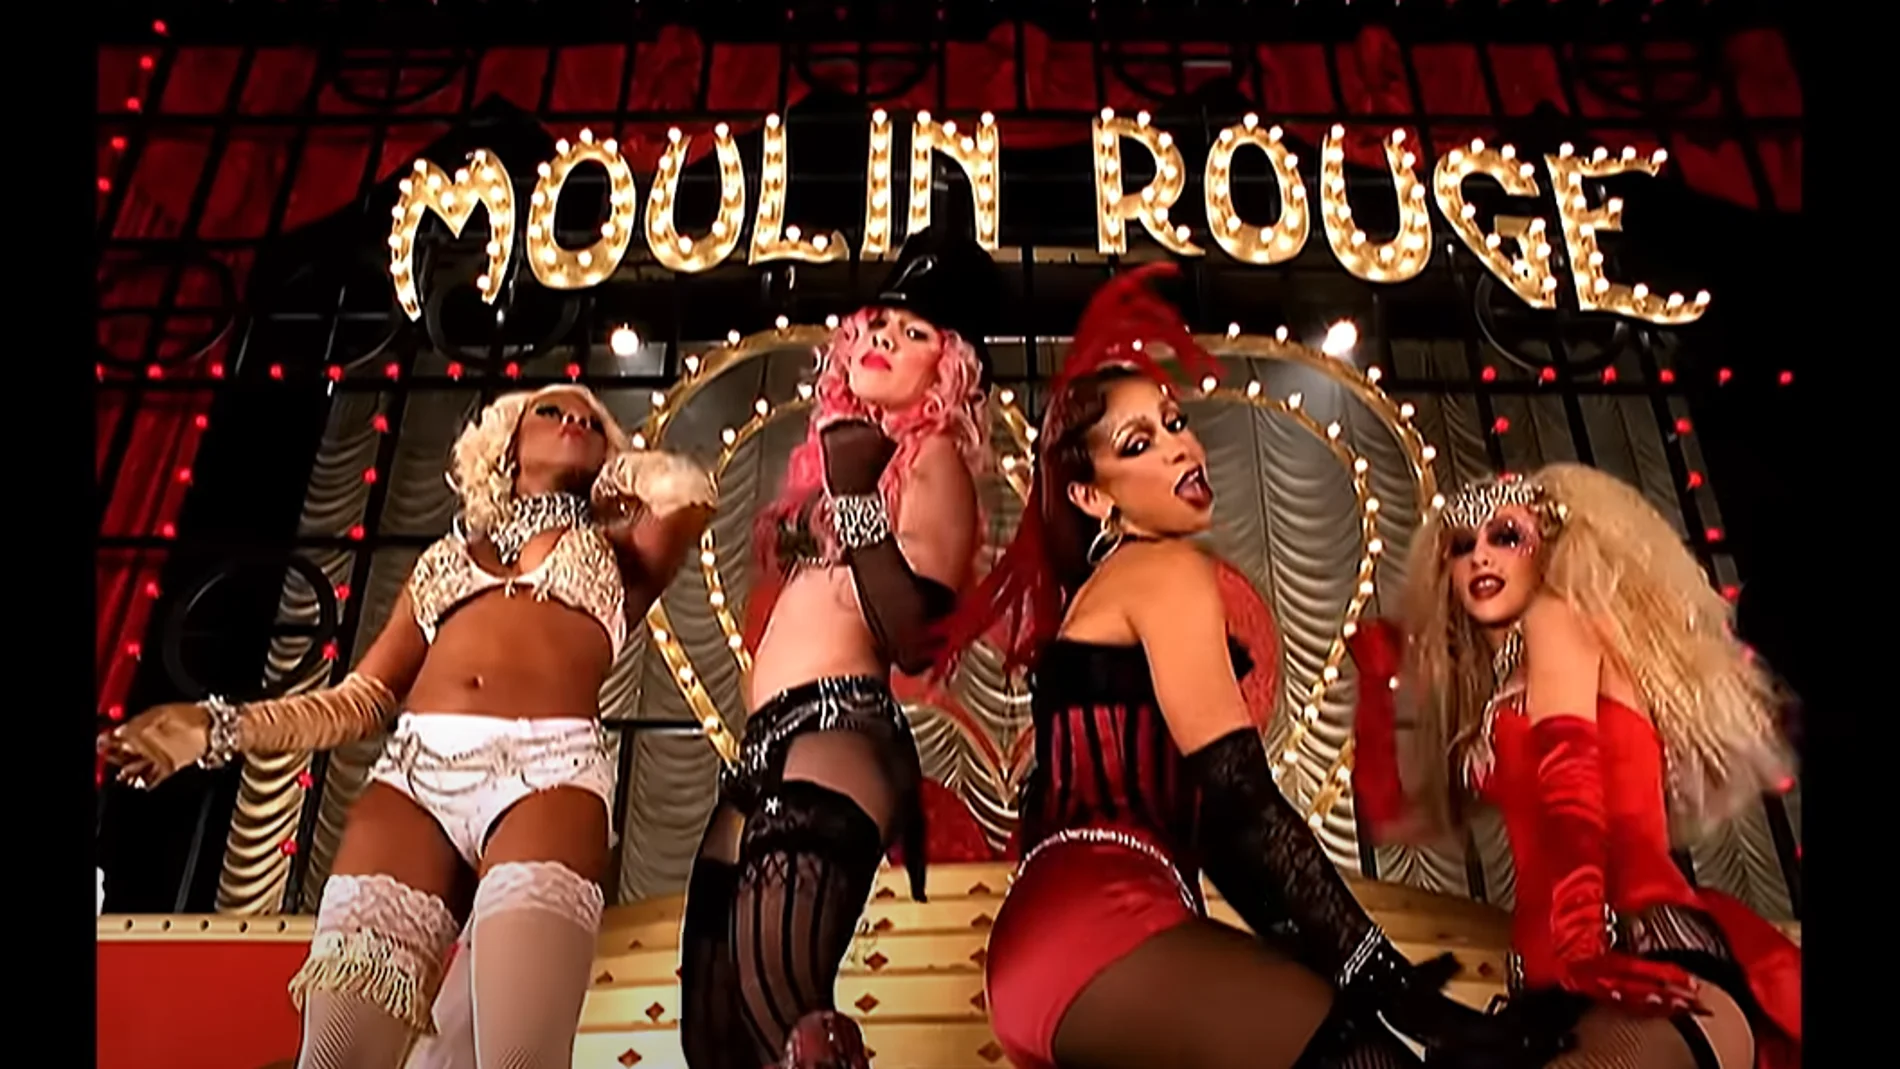 Pink! arremete contra Christina Aguilera por 'Lady Mermelade', un vídeoclip de hace 23 años, y explota en redes sociales